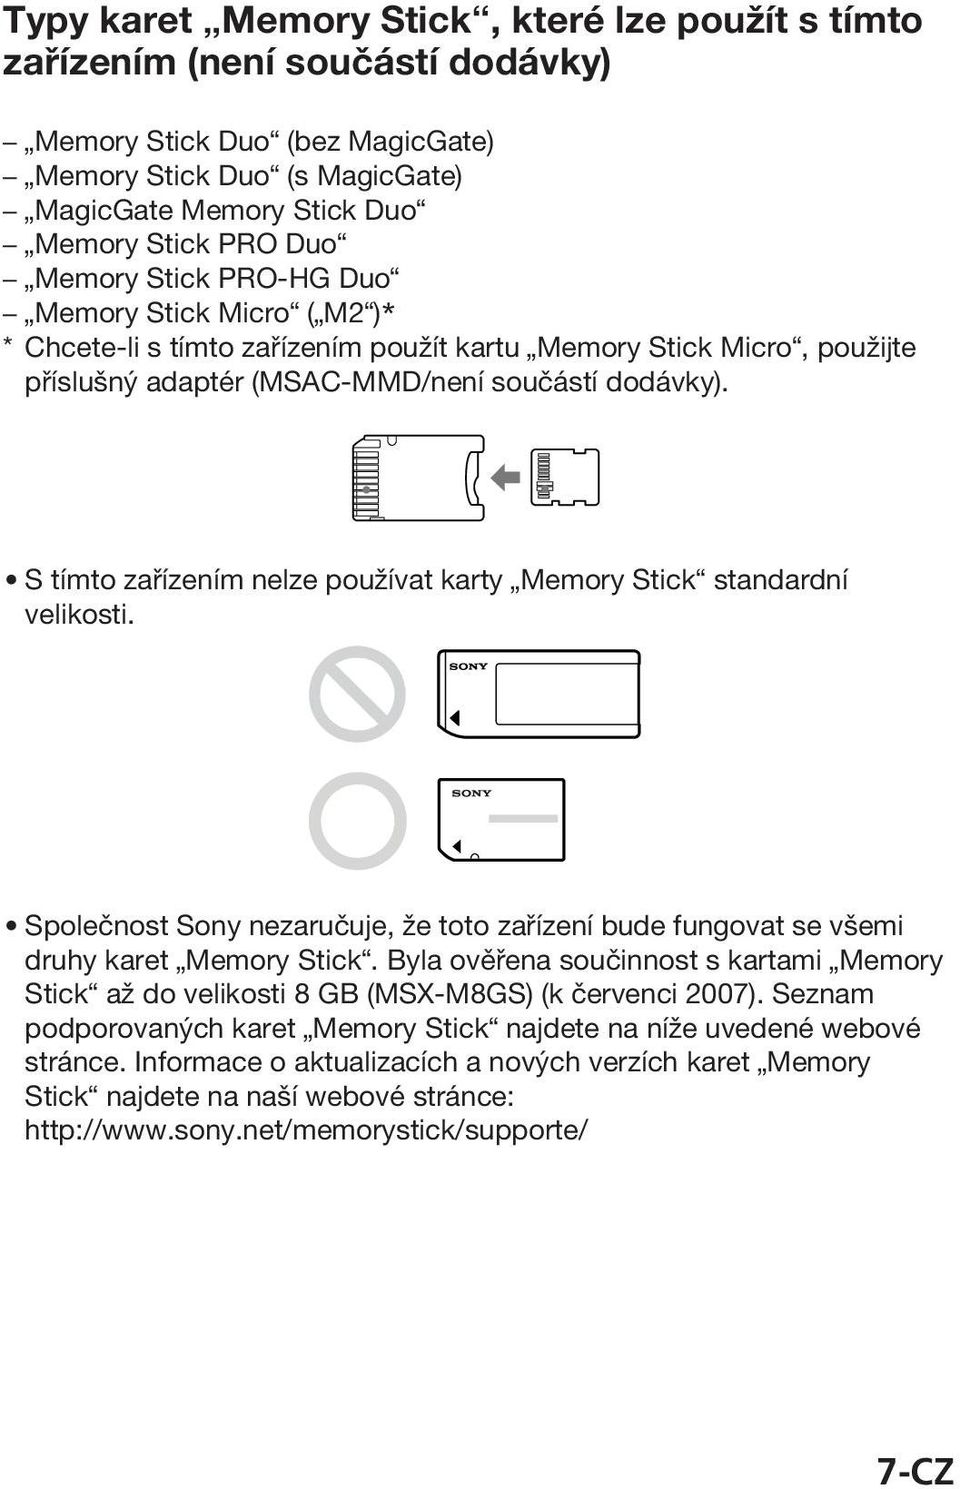 S tímto zařízením nelze používat karty Memory Stick standardní velikosti. Společnost Sony nezaručuje, že toto zařízení bude fungovat se všemi druhy karet Memory Stick.